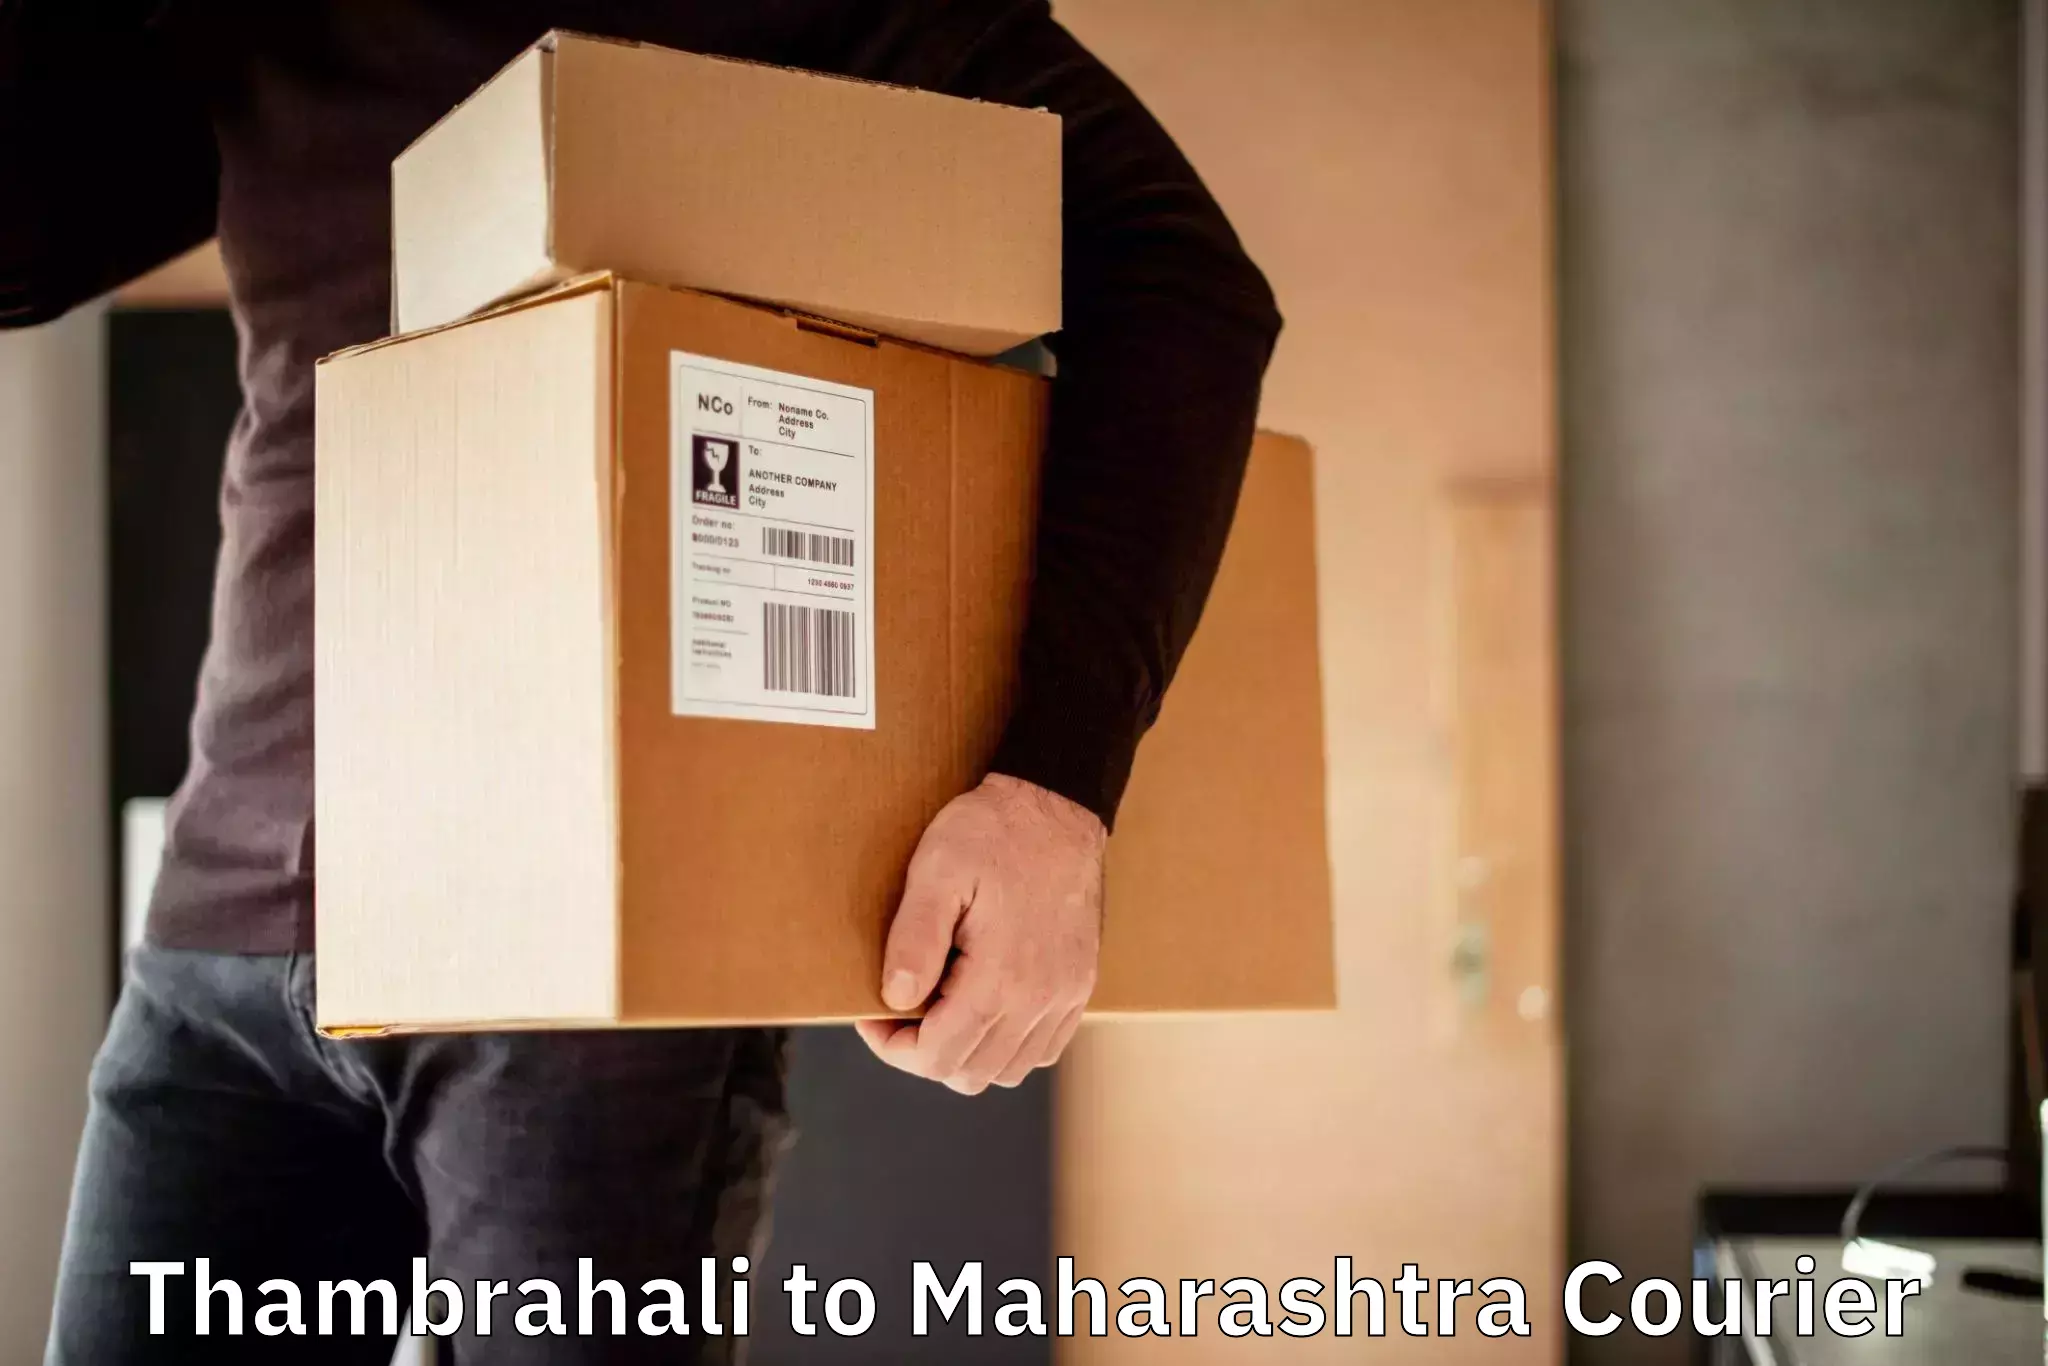 Fast shipping solutions Thambrahali to NIT Nagpur